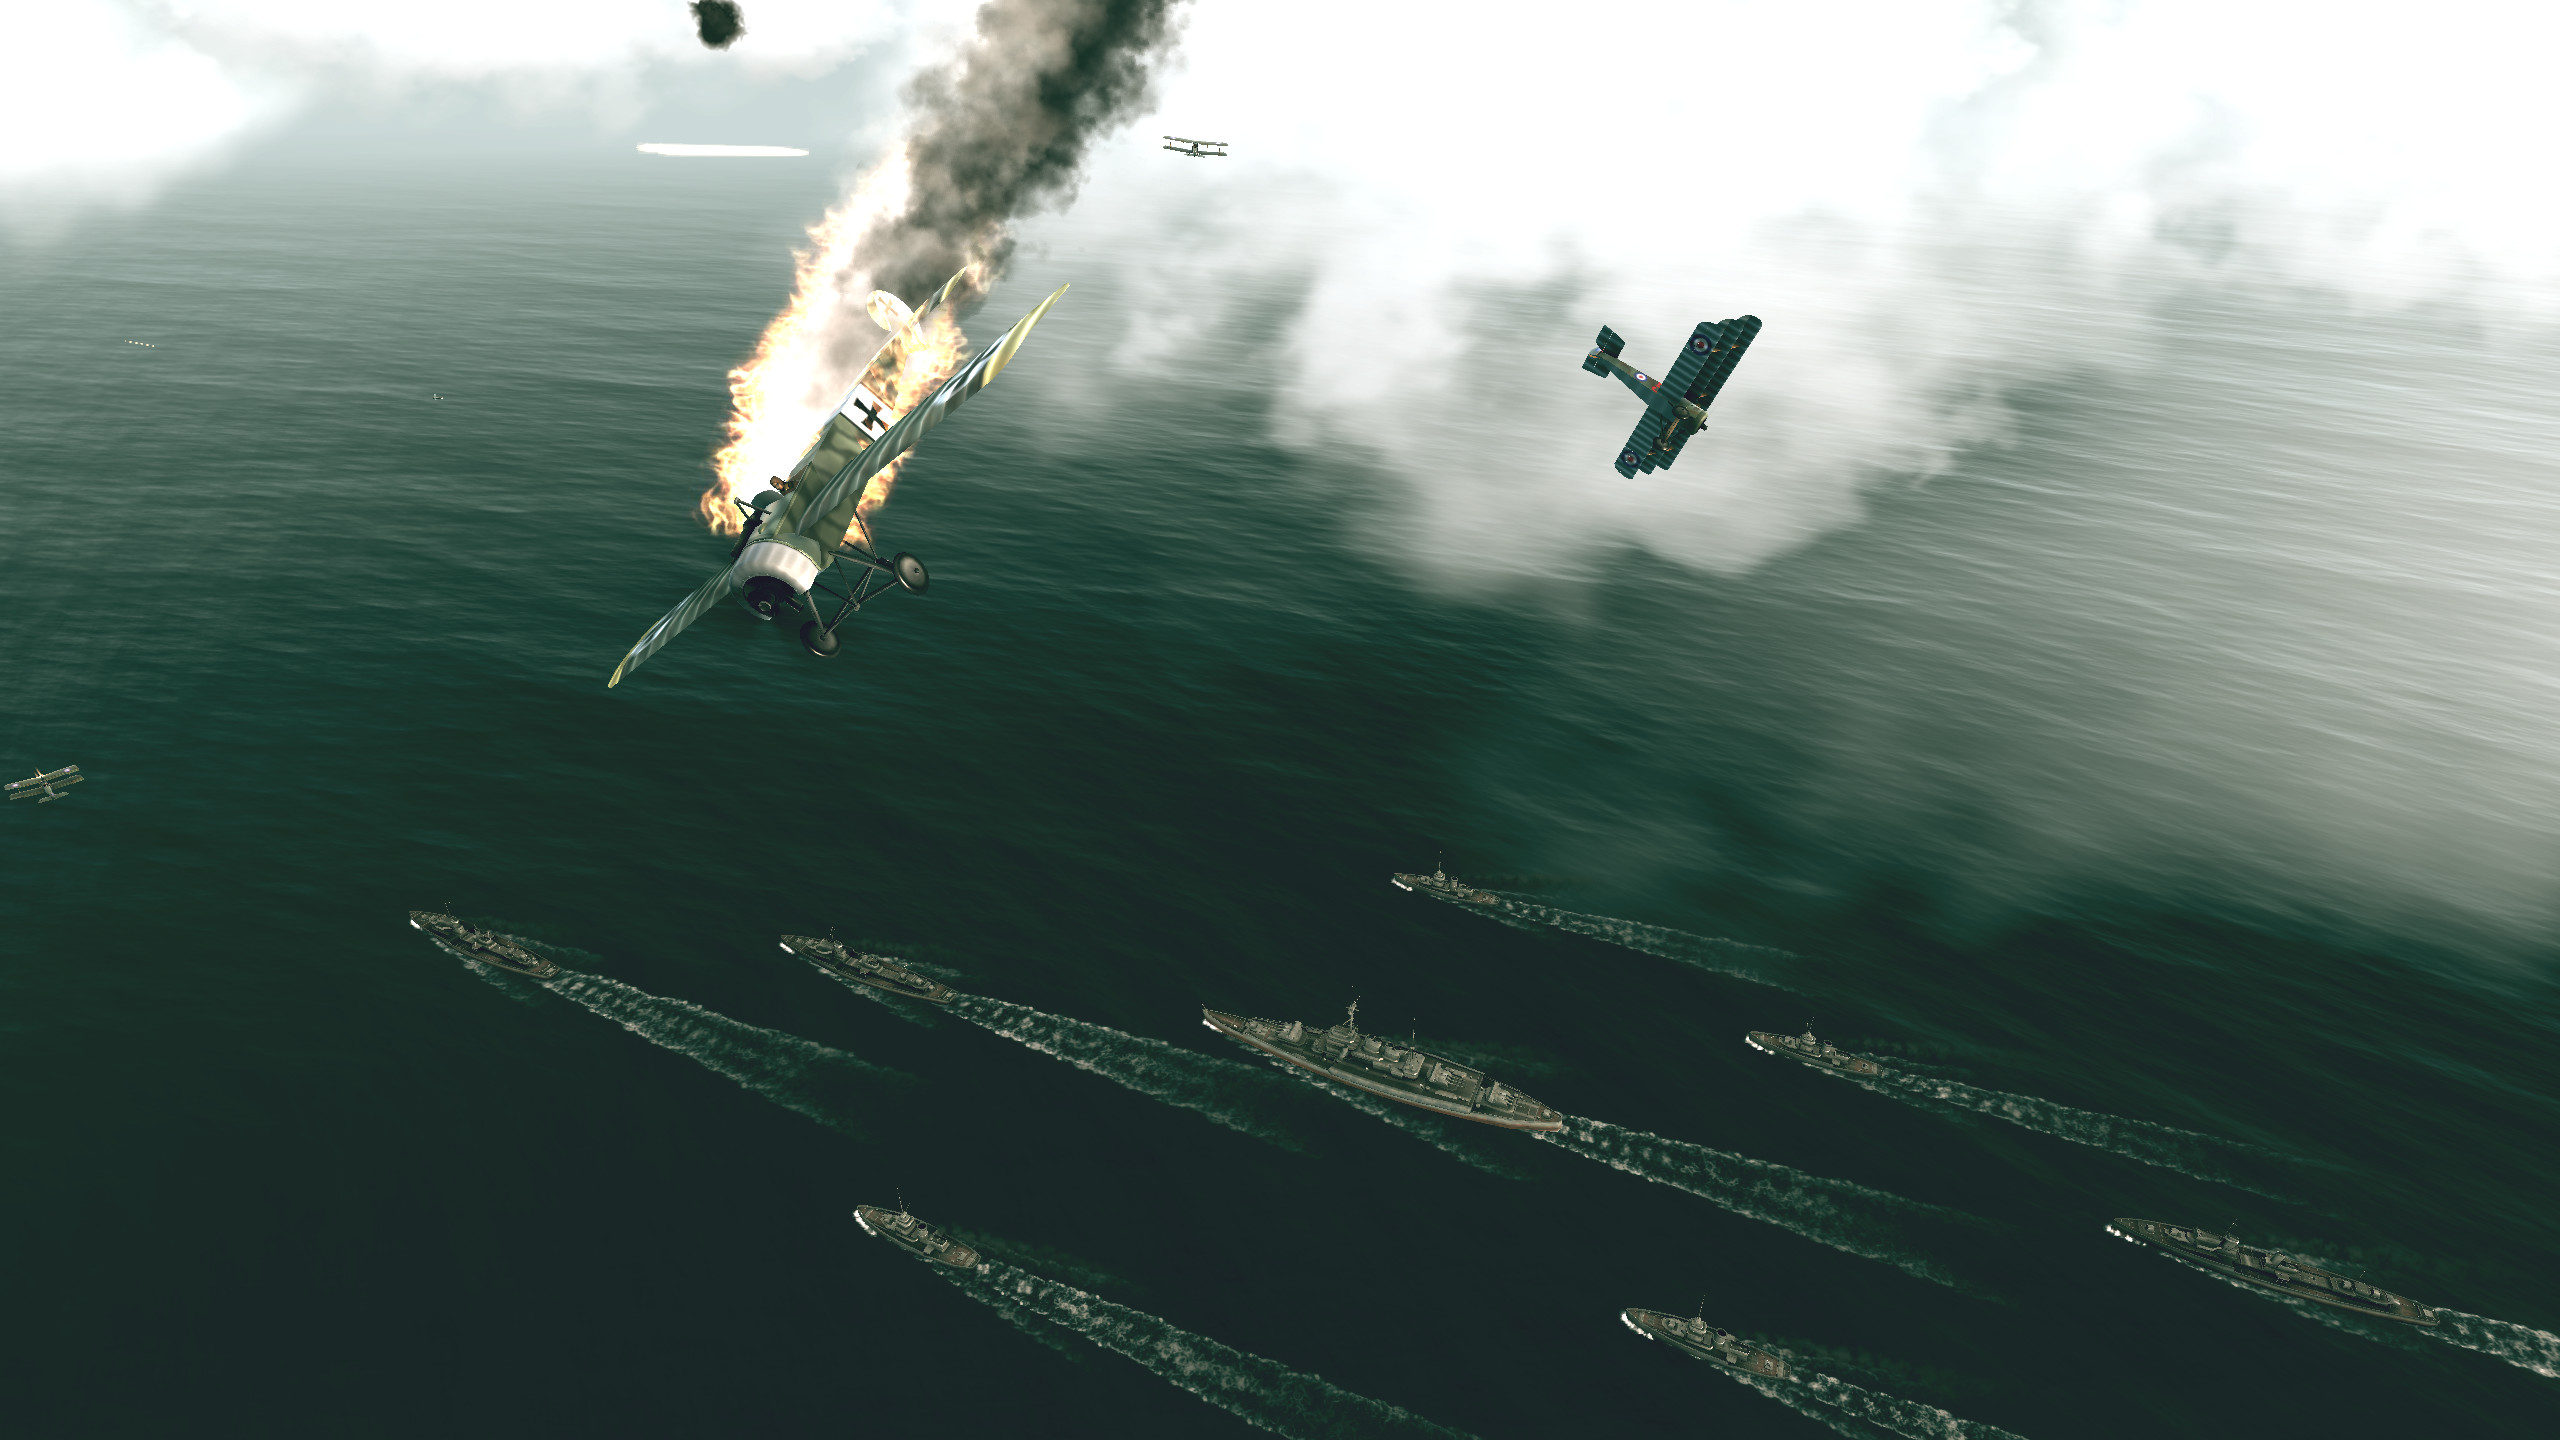 Warplanes: WW1 Sky Aces screenshot